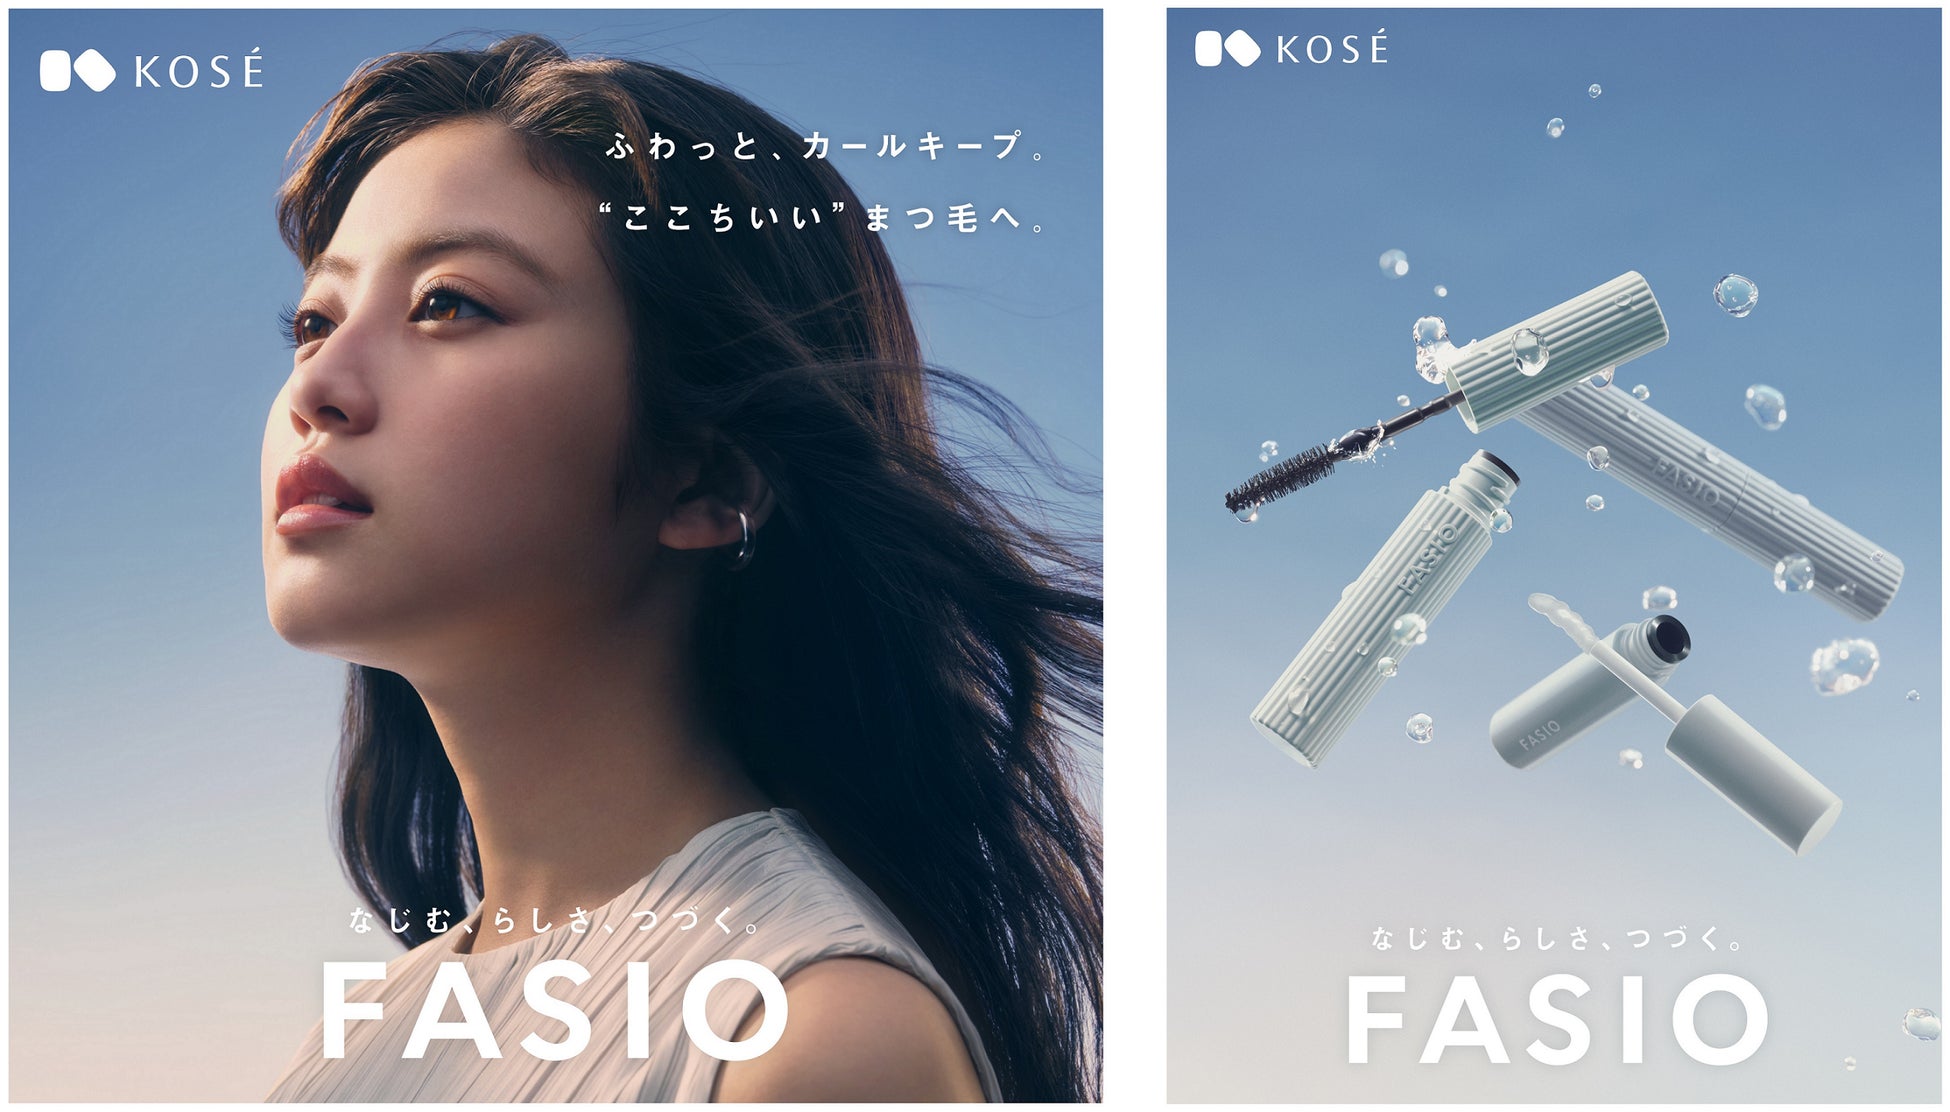 ほかでは見られない、ファシオならではの今田美桜さん　マスカラの心地よさを伝えるリラックスした表情や、楽しそうにまつ毛をケアする、ファシオ 新ビジュアル & スペシャルムービー公開！